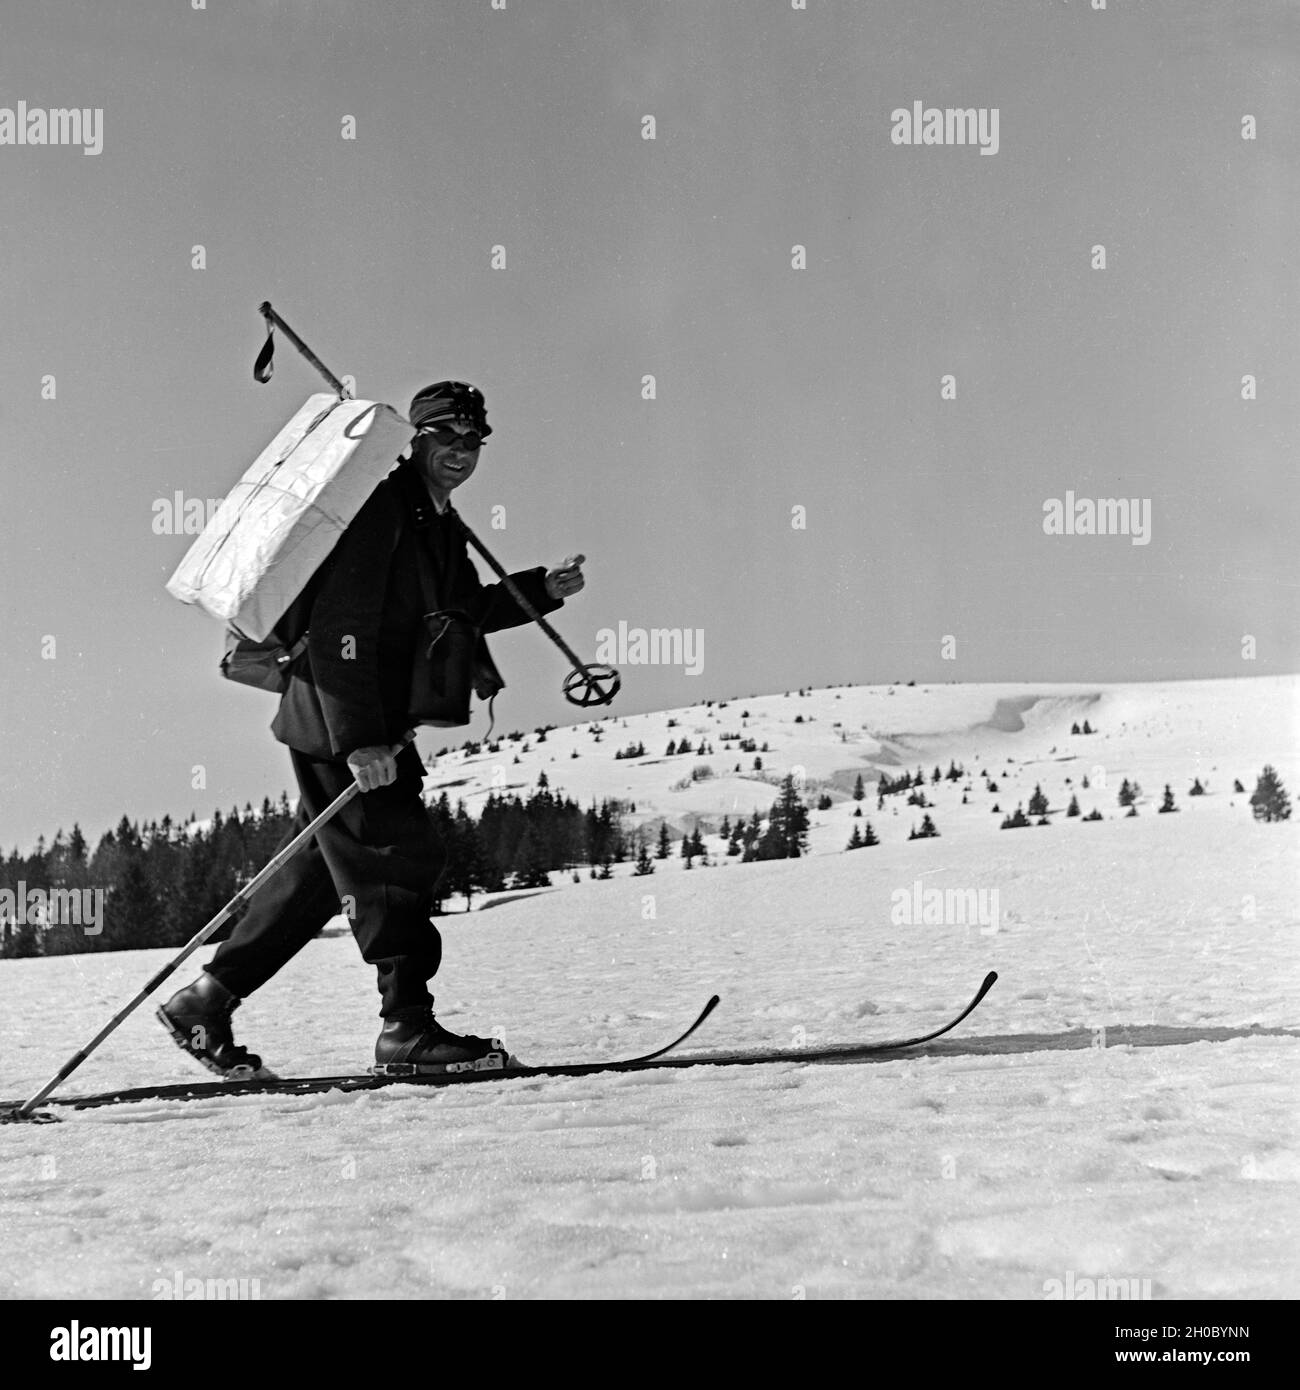 Im tief verschneiten Feldberggebiet kommt der Briefträger auf Skiern, Deutschland 1930er Jahre. In the deeply snowed in Feldberg area even the postman uses ski, Germany 1930s. Stock Photo